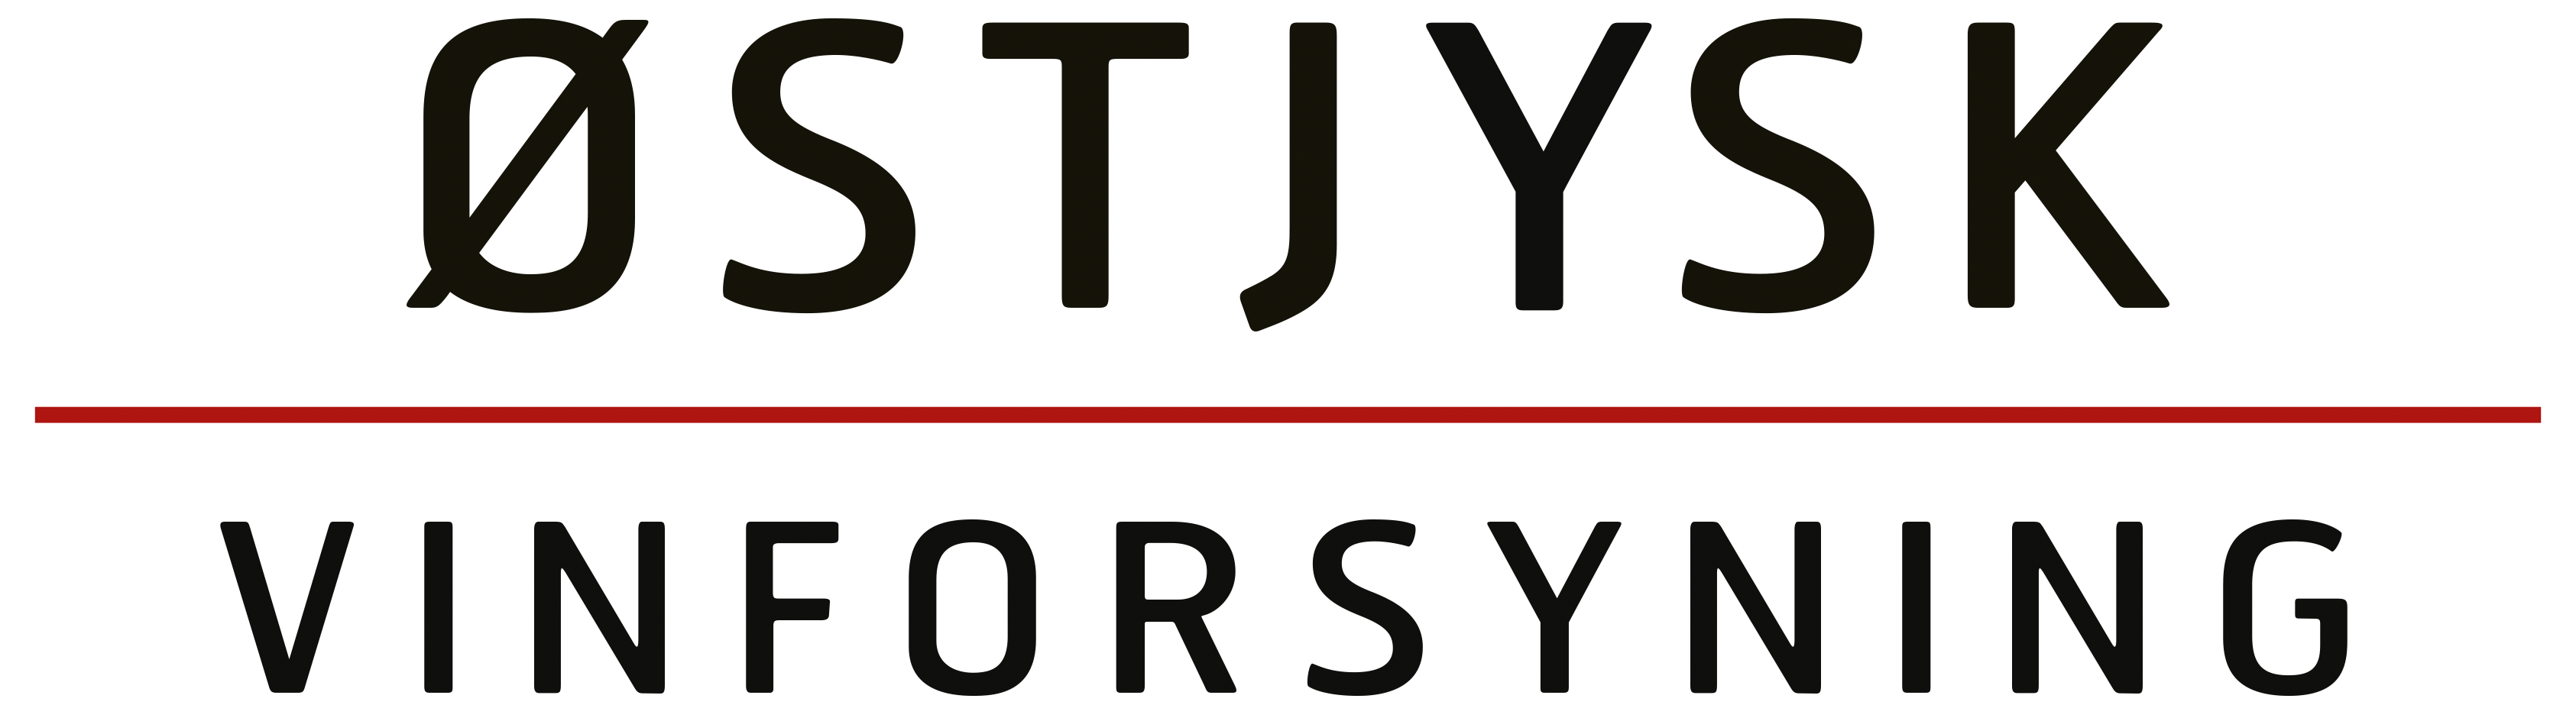 Logo Oestjysk FINAL